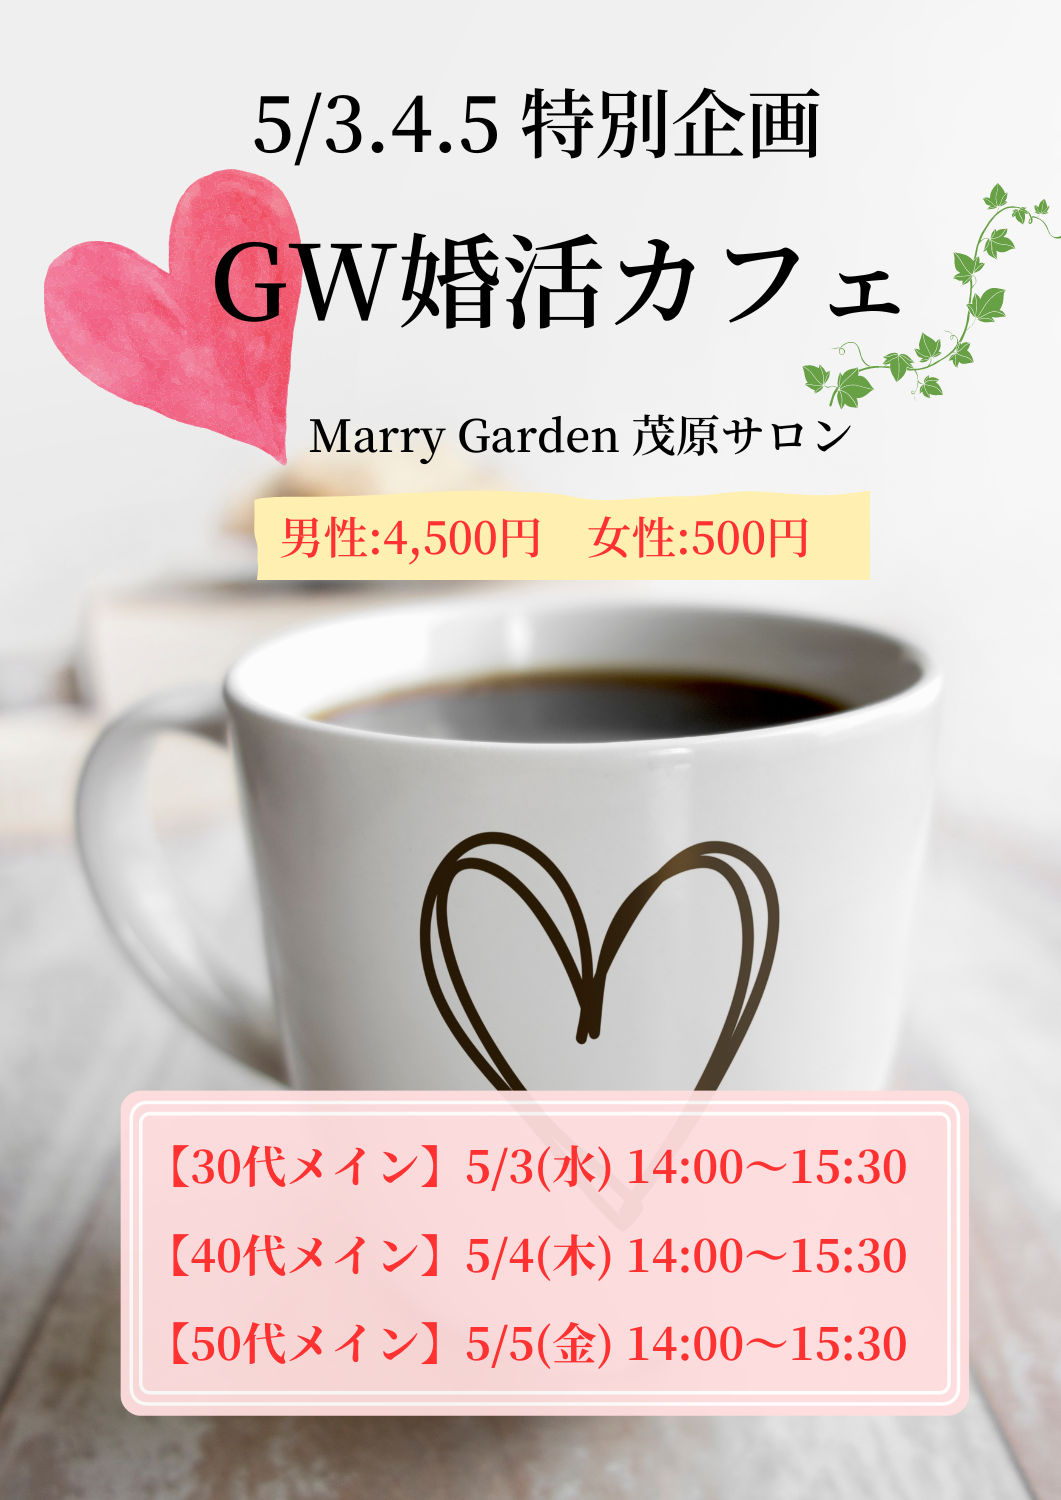 【茂原】GWの婚活イベントを企画しました！